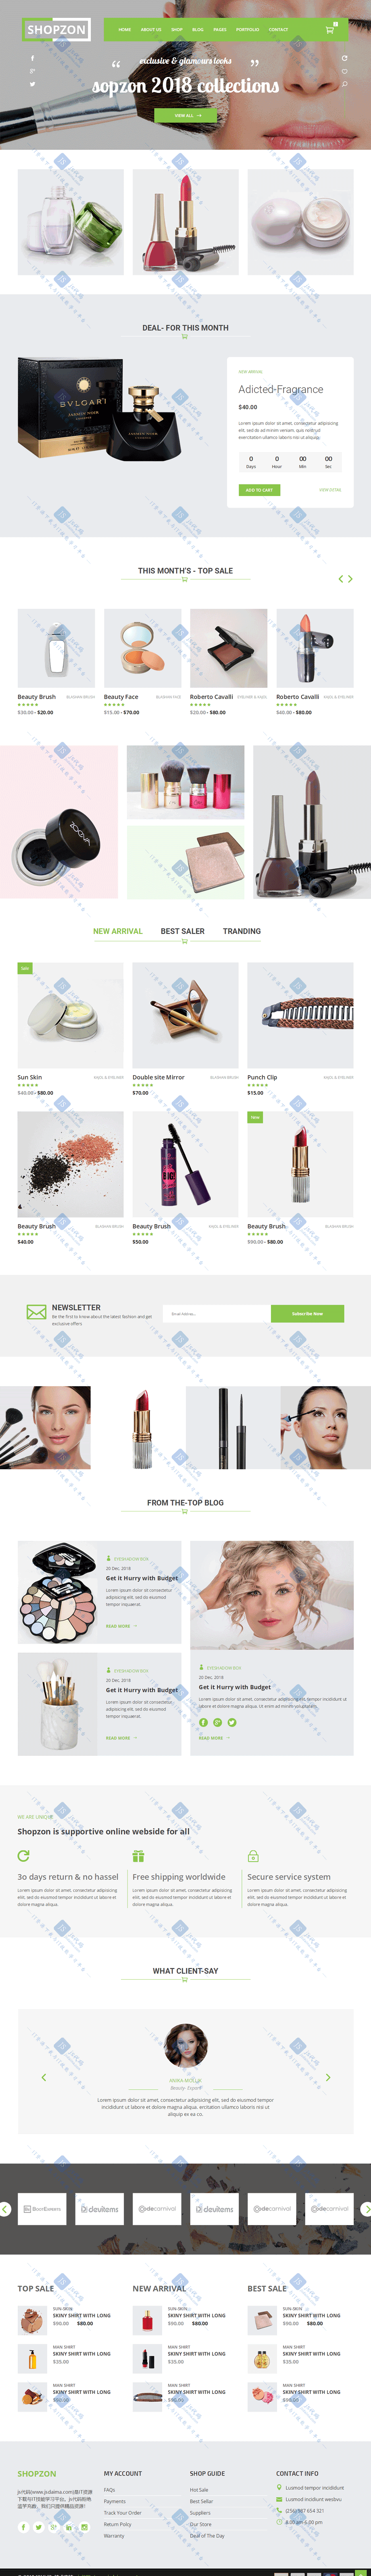 绿色宽屏美容彩妆护肤品网上商城HTML5响应式网站模板